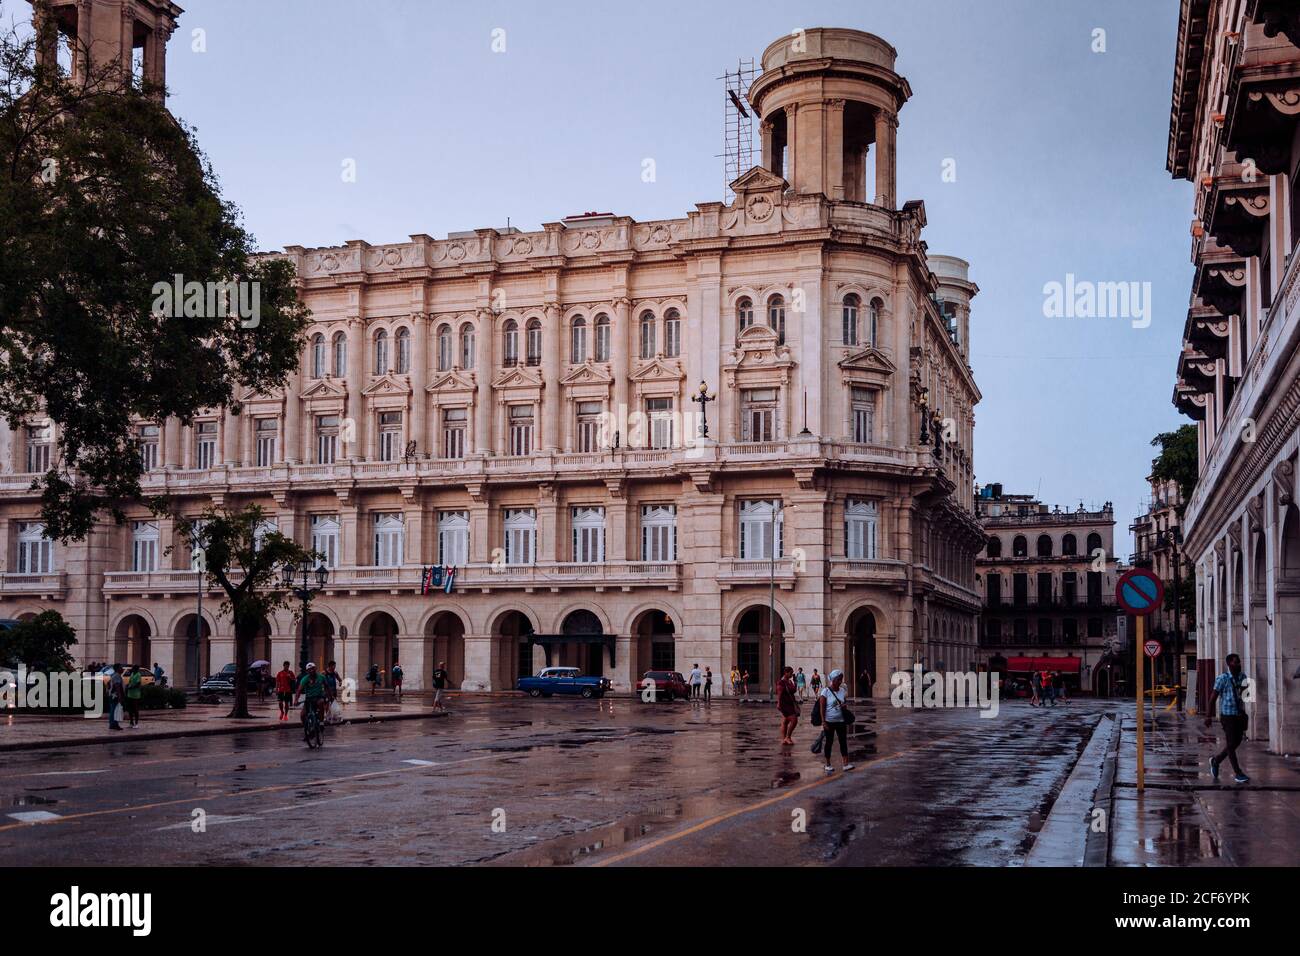 La Havane, Cuba - 14 DÉCEMBRE 2019 : ancien bâtiment colonial en pierre sur la place de la ville avec un pavé humide après la pluie et un ciel gris en arrière-plan Banque D'Images